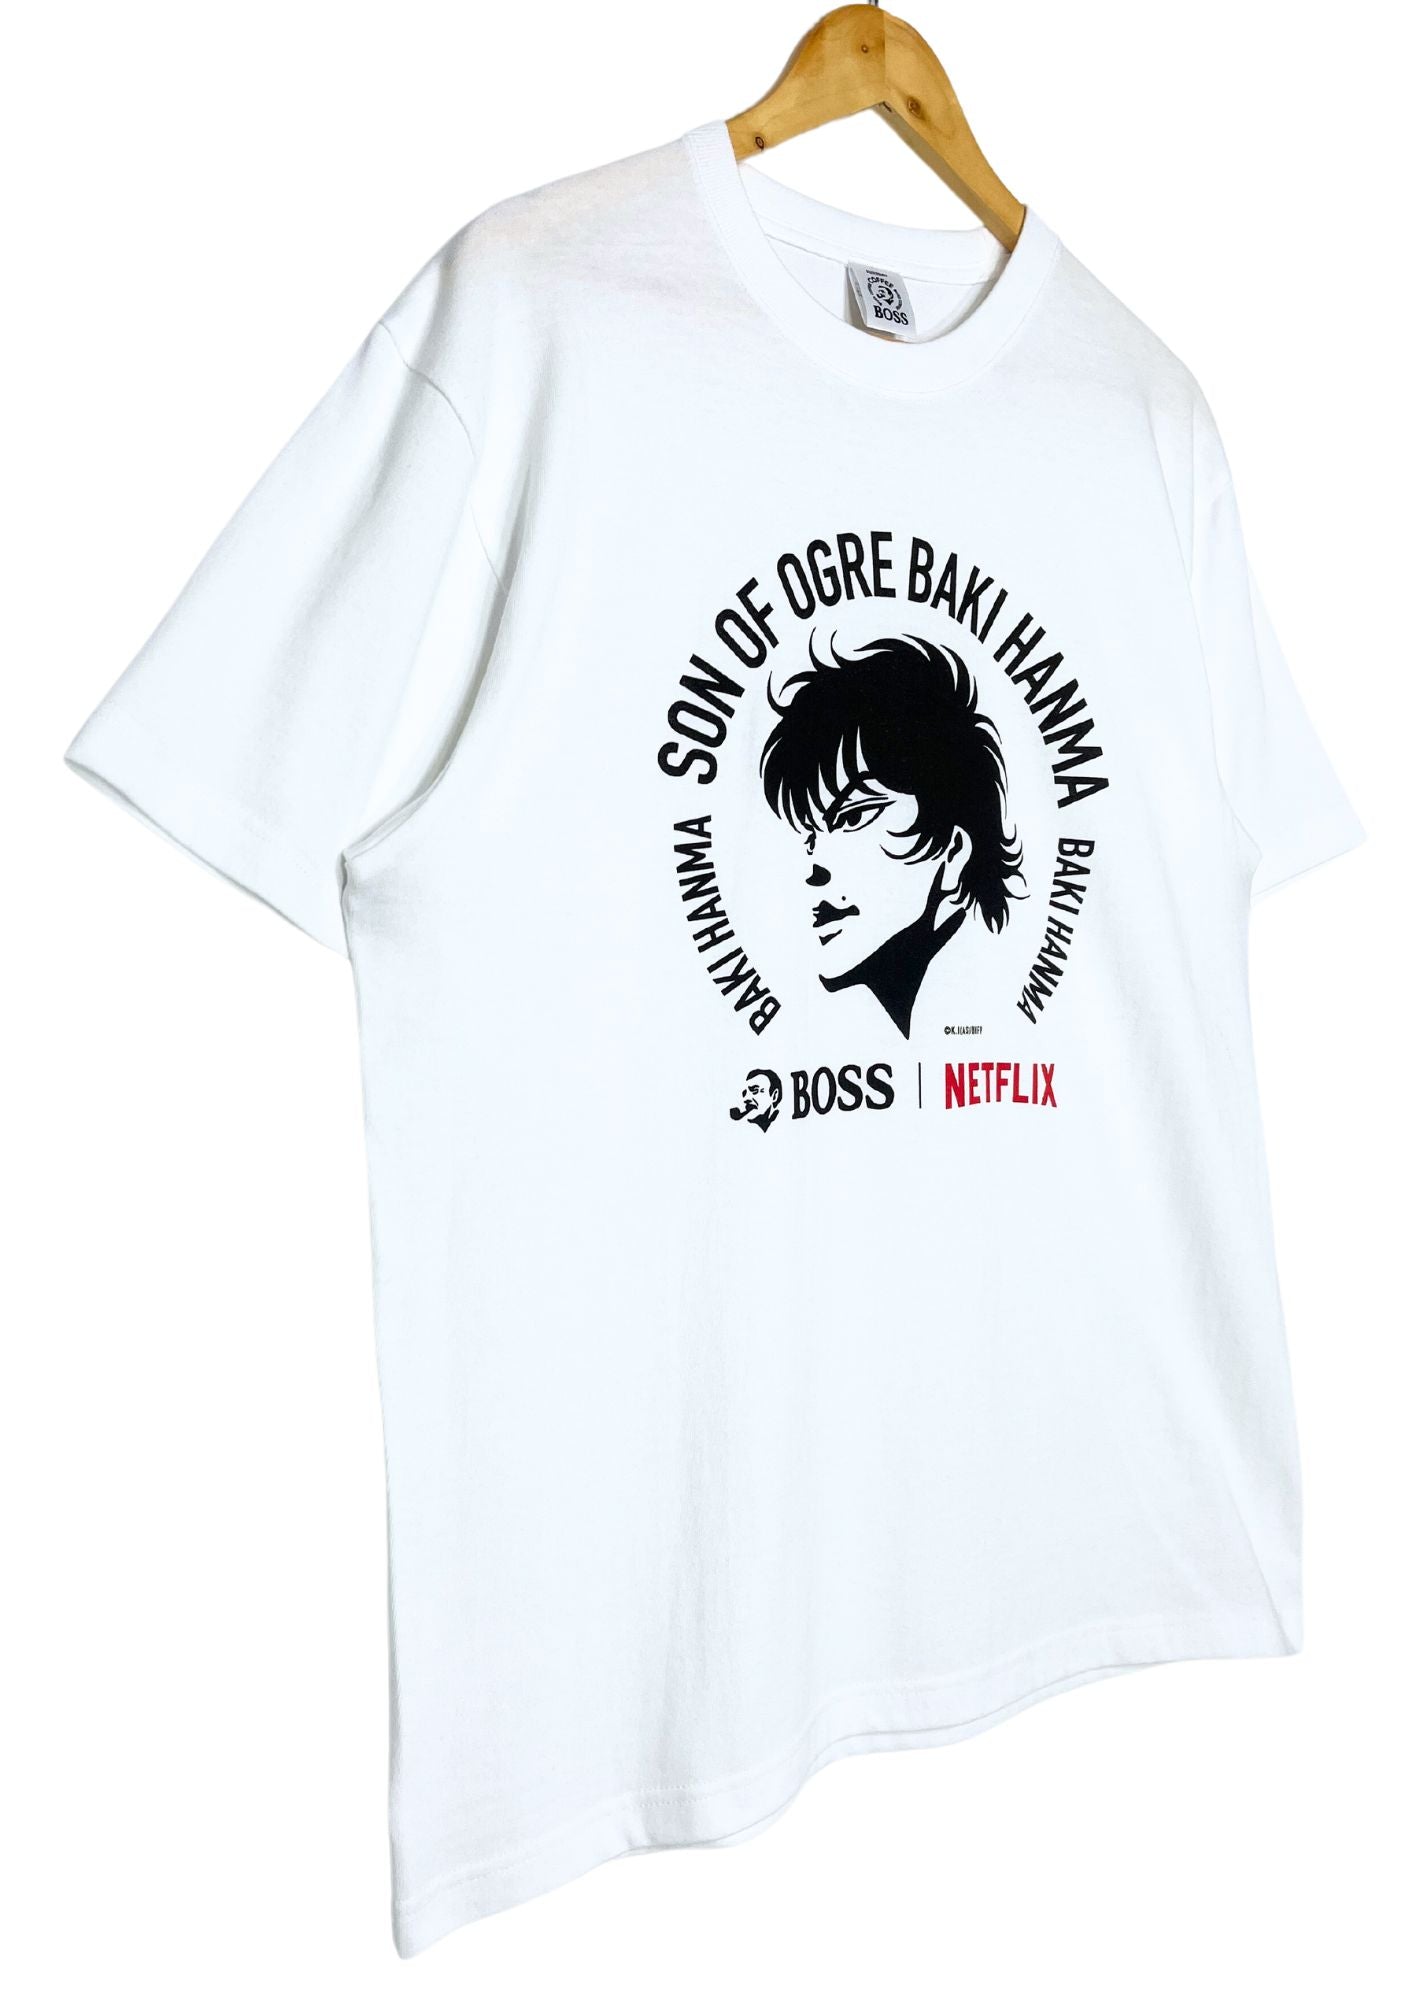 2022 Baki The Grappler x BOSS x Netflix Prize Limited T-shirt